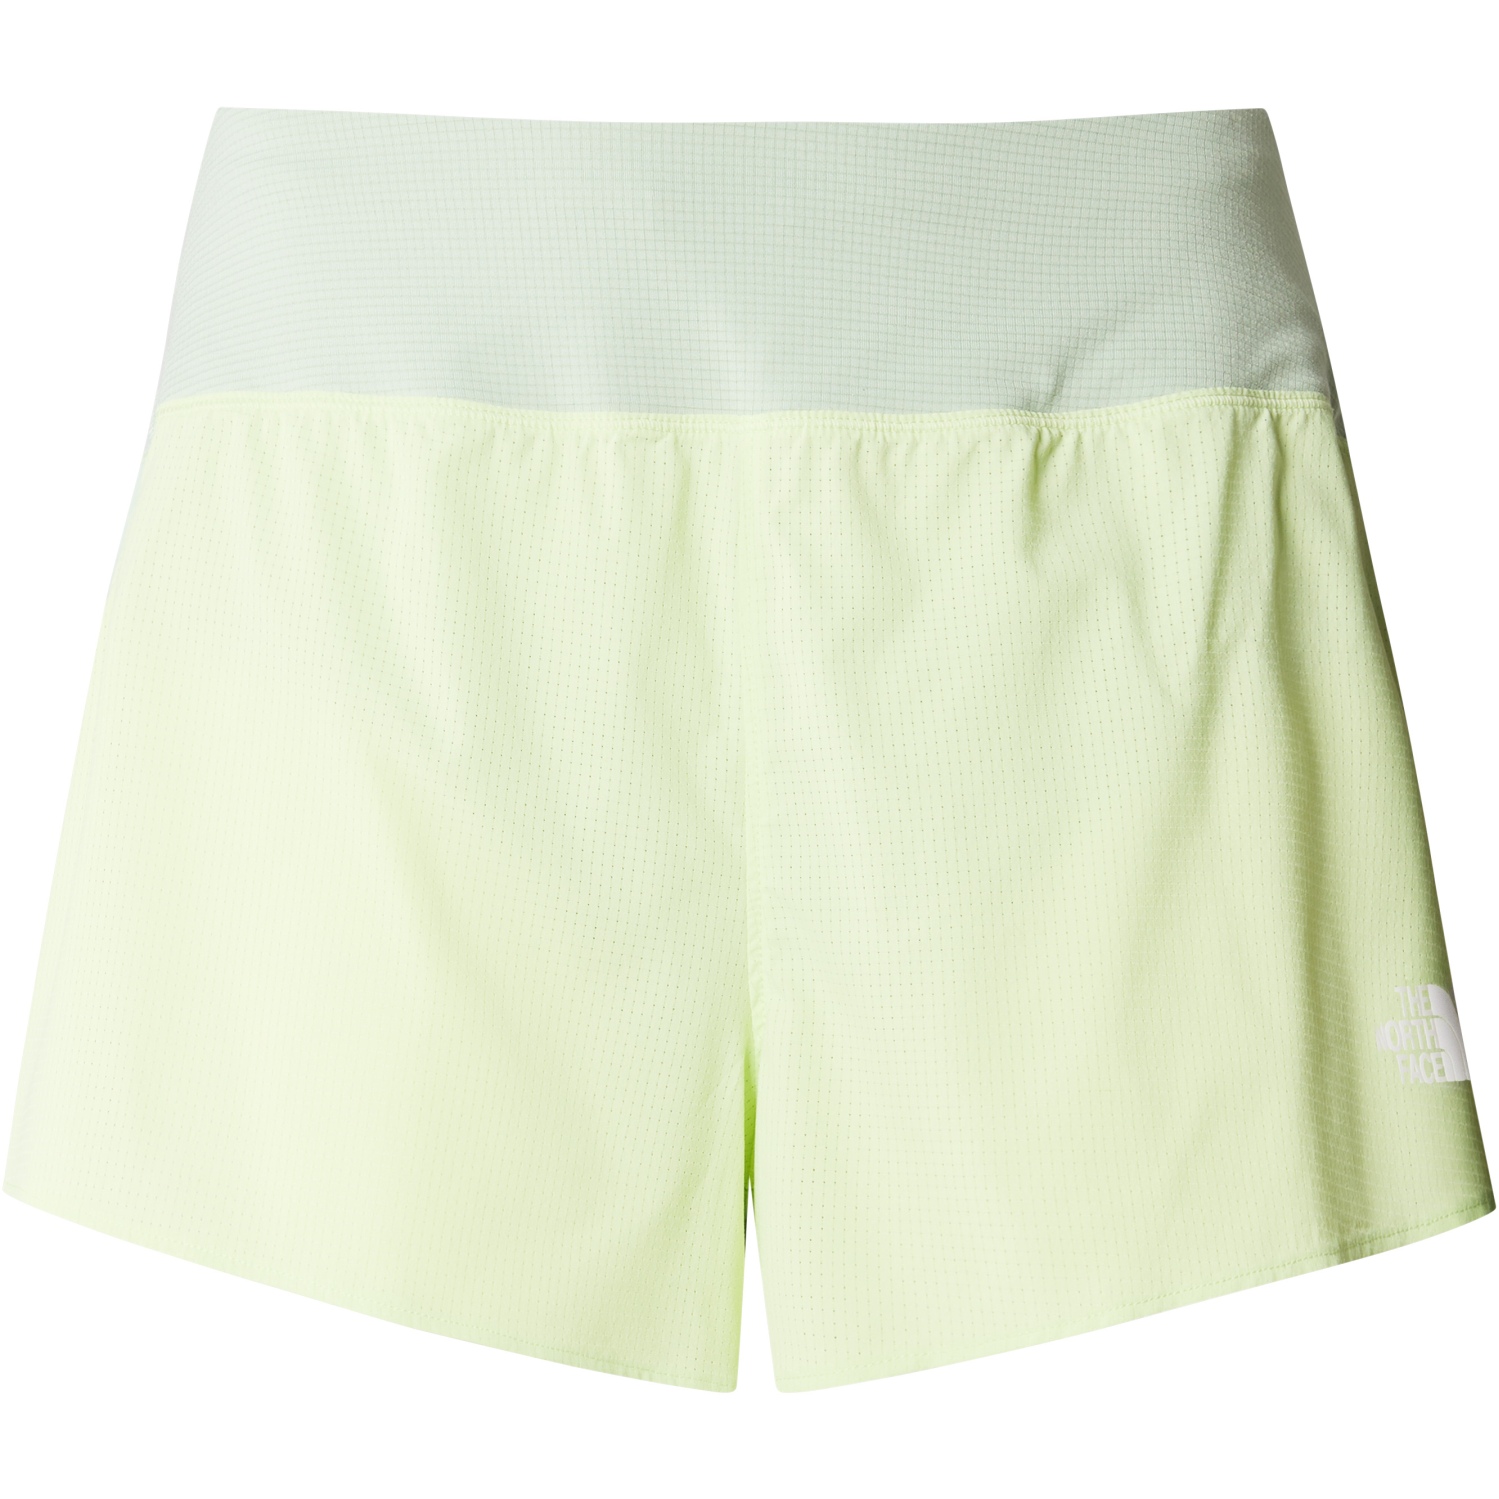 Produktbild von The North Face Summer LT 2.5&quot; Shorts Damen - Astro Lime/Misty Sage